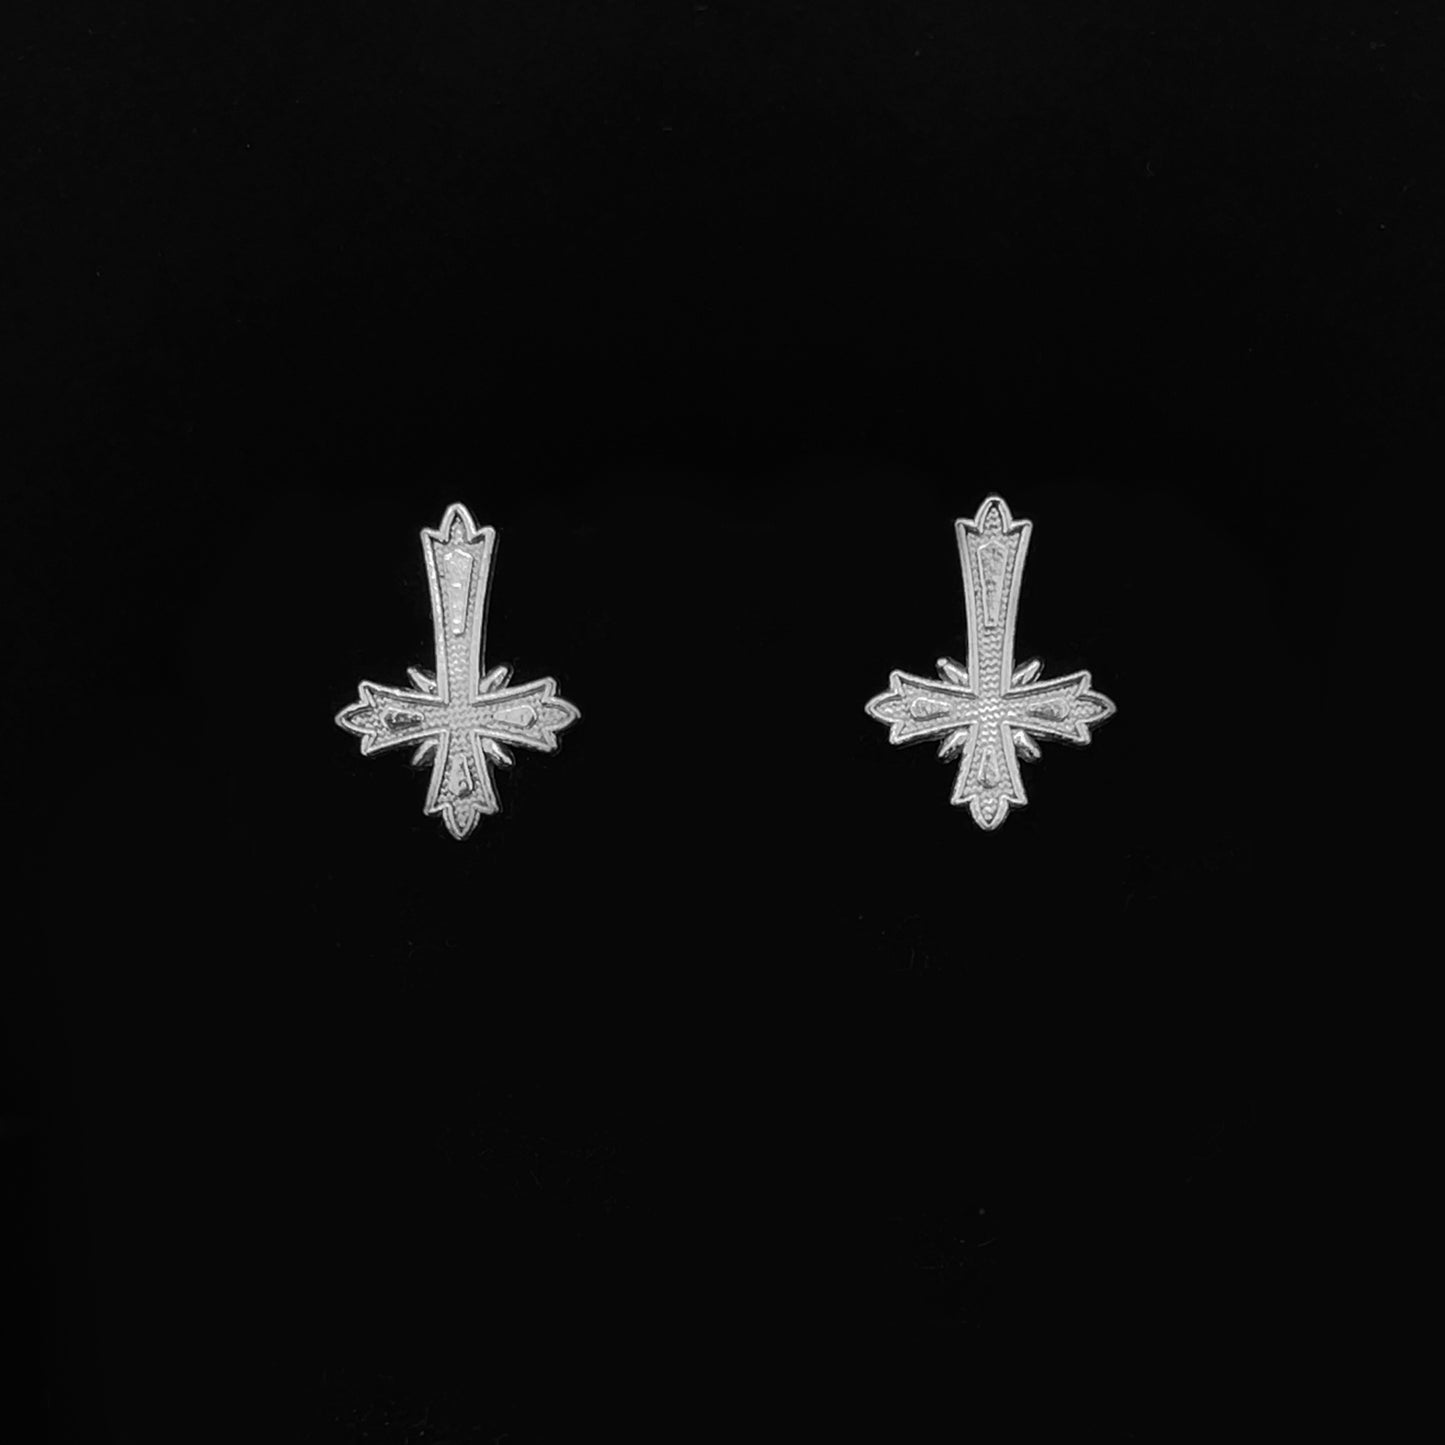 Upside Down Cross Earrings